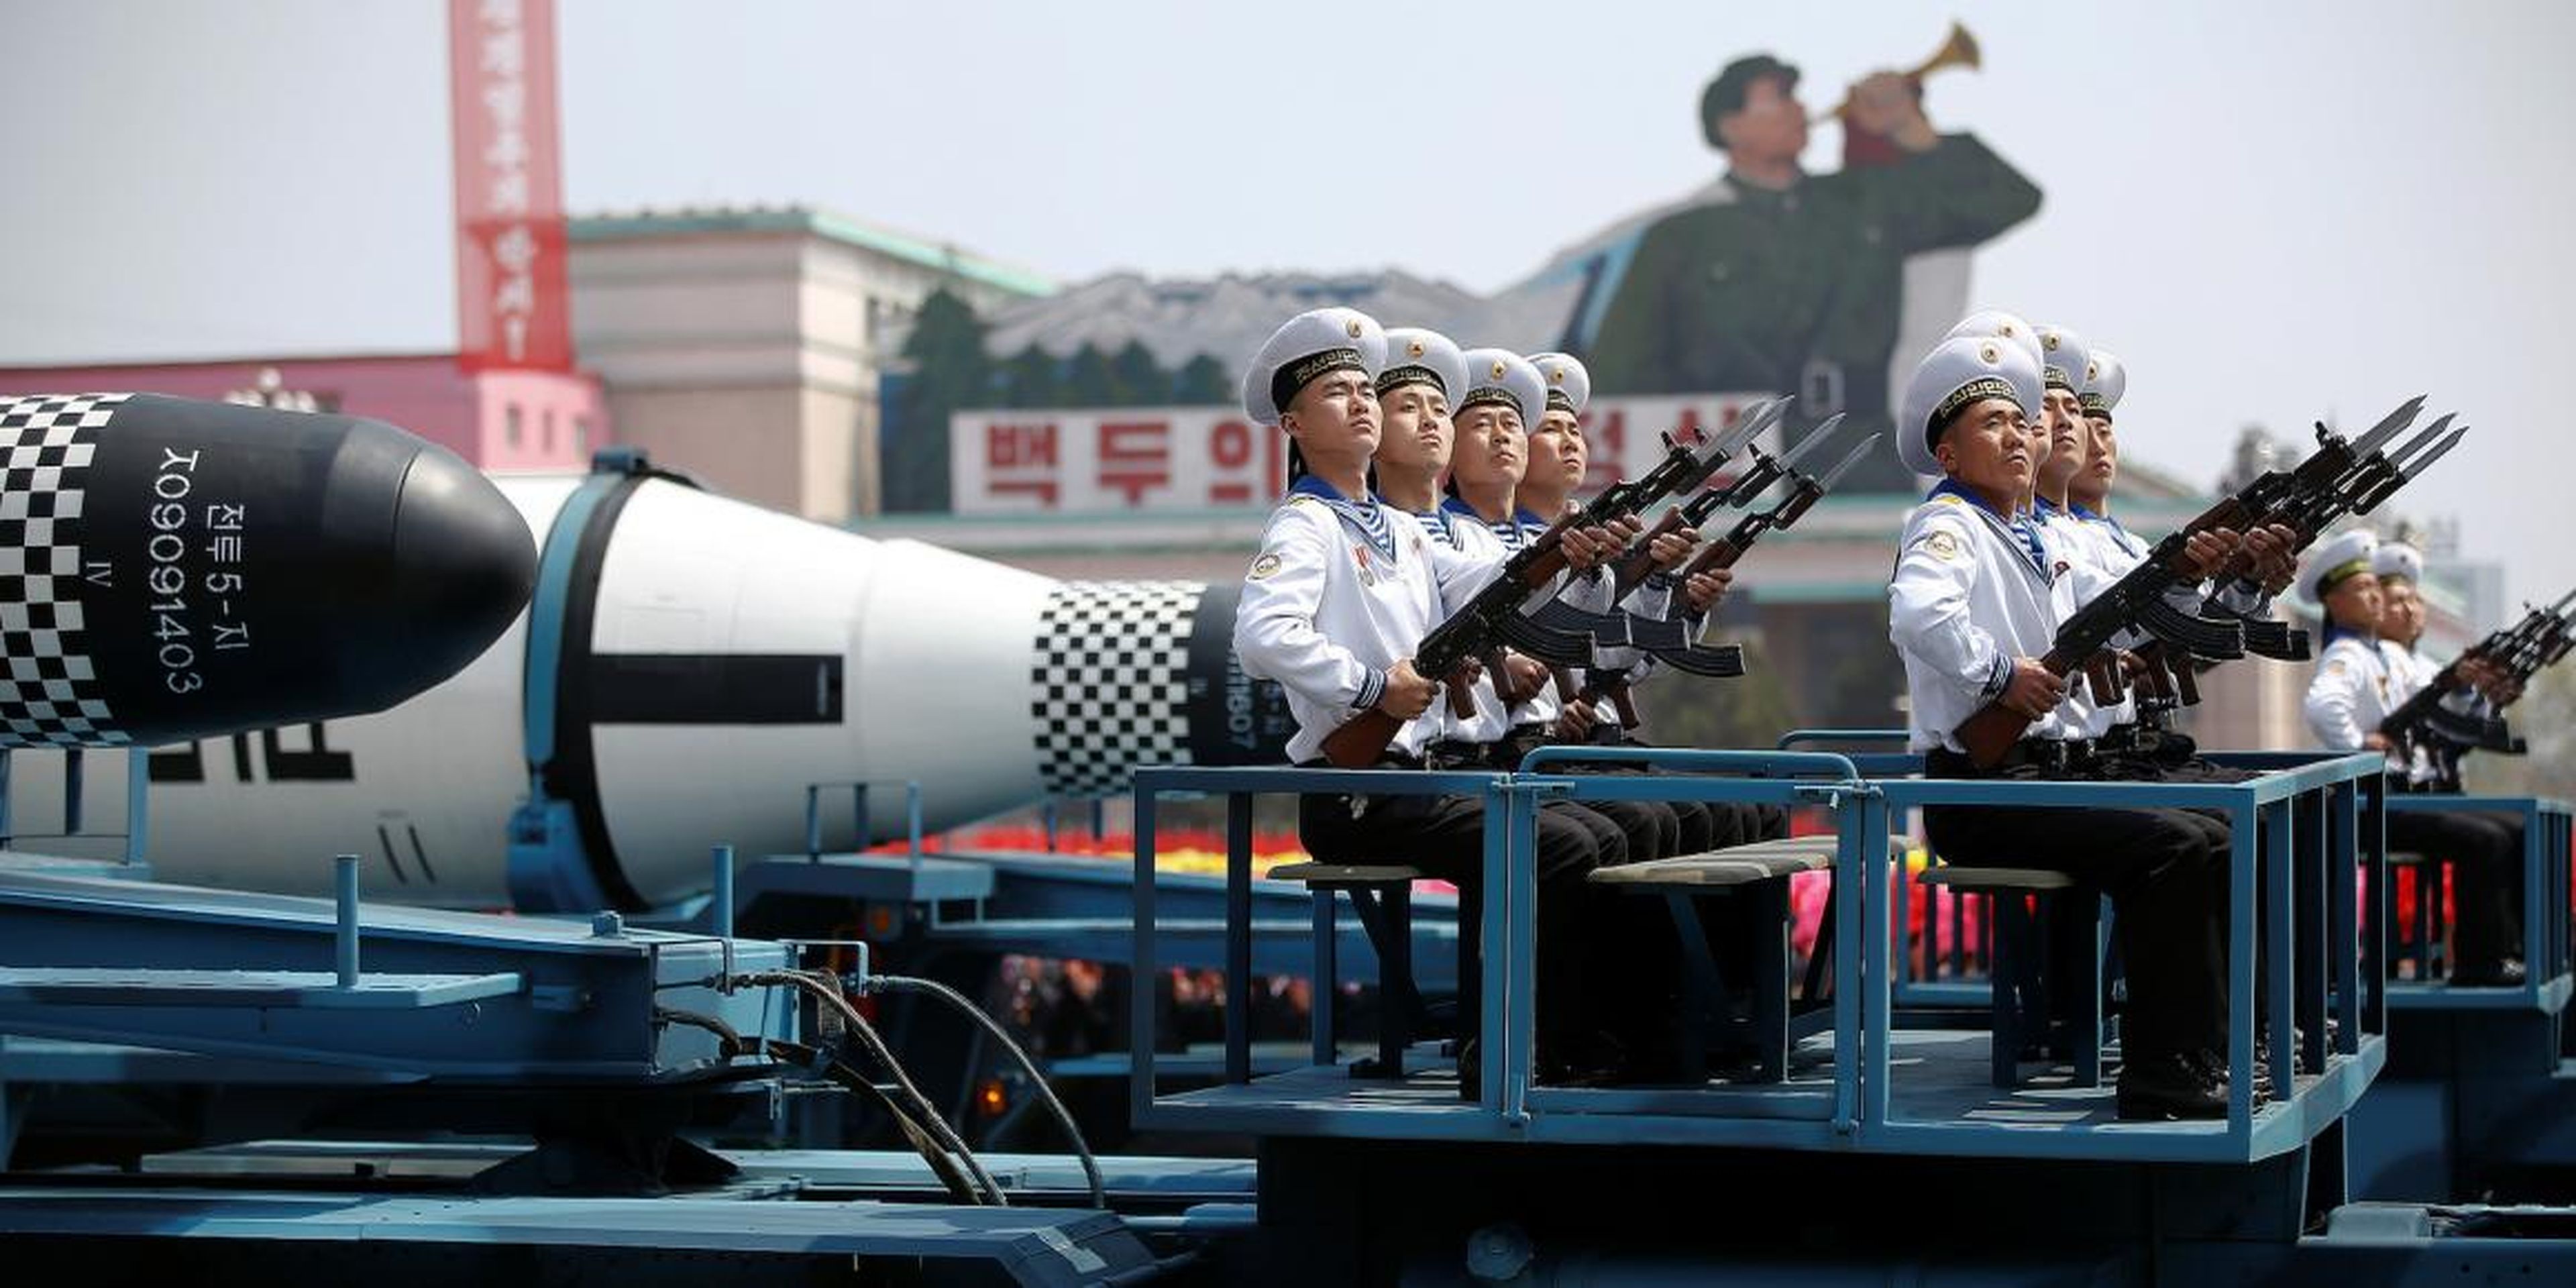 Vehículos militares transportan misiles durante un desfile militar en Corea del Norte